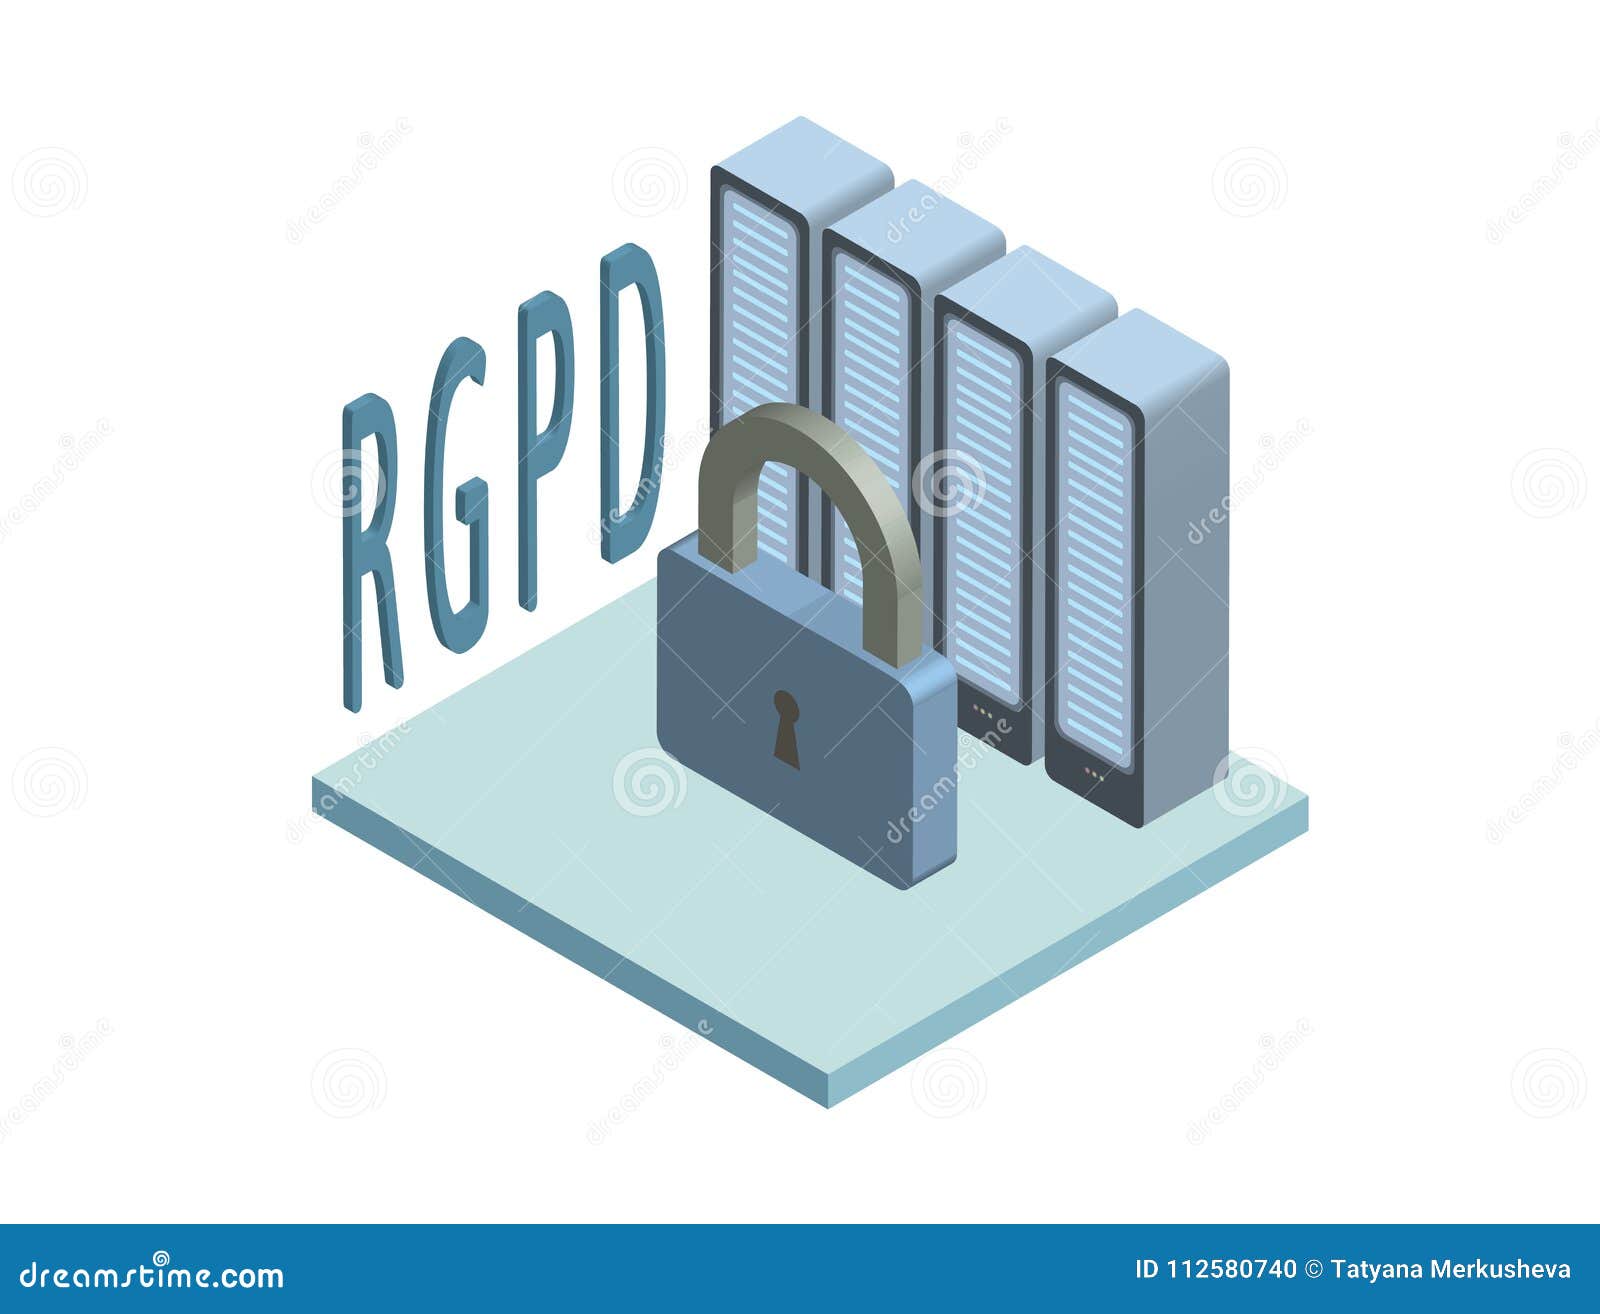 rgpd, spanish and italian version version of gdpr, regolamento generale sulla protezione dei dati. concept isometric